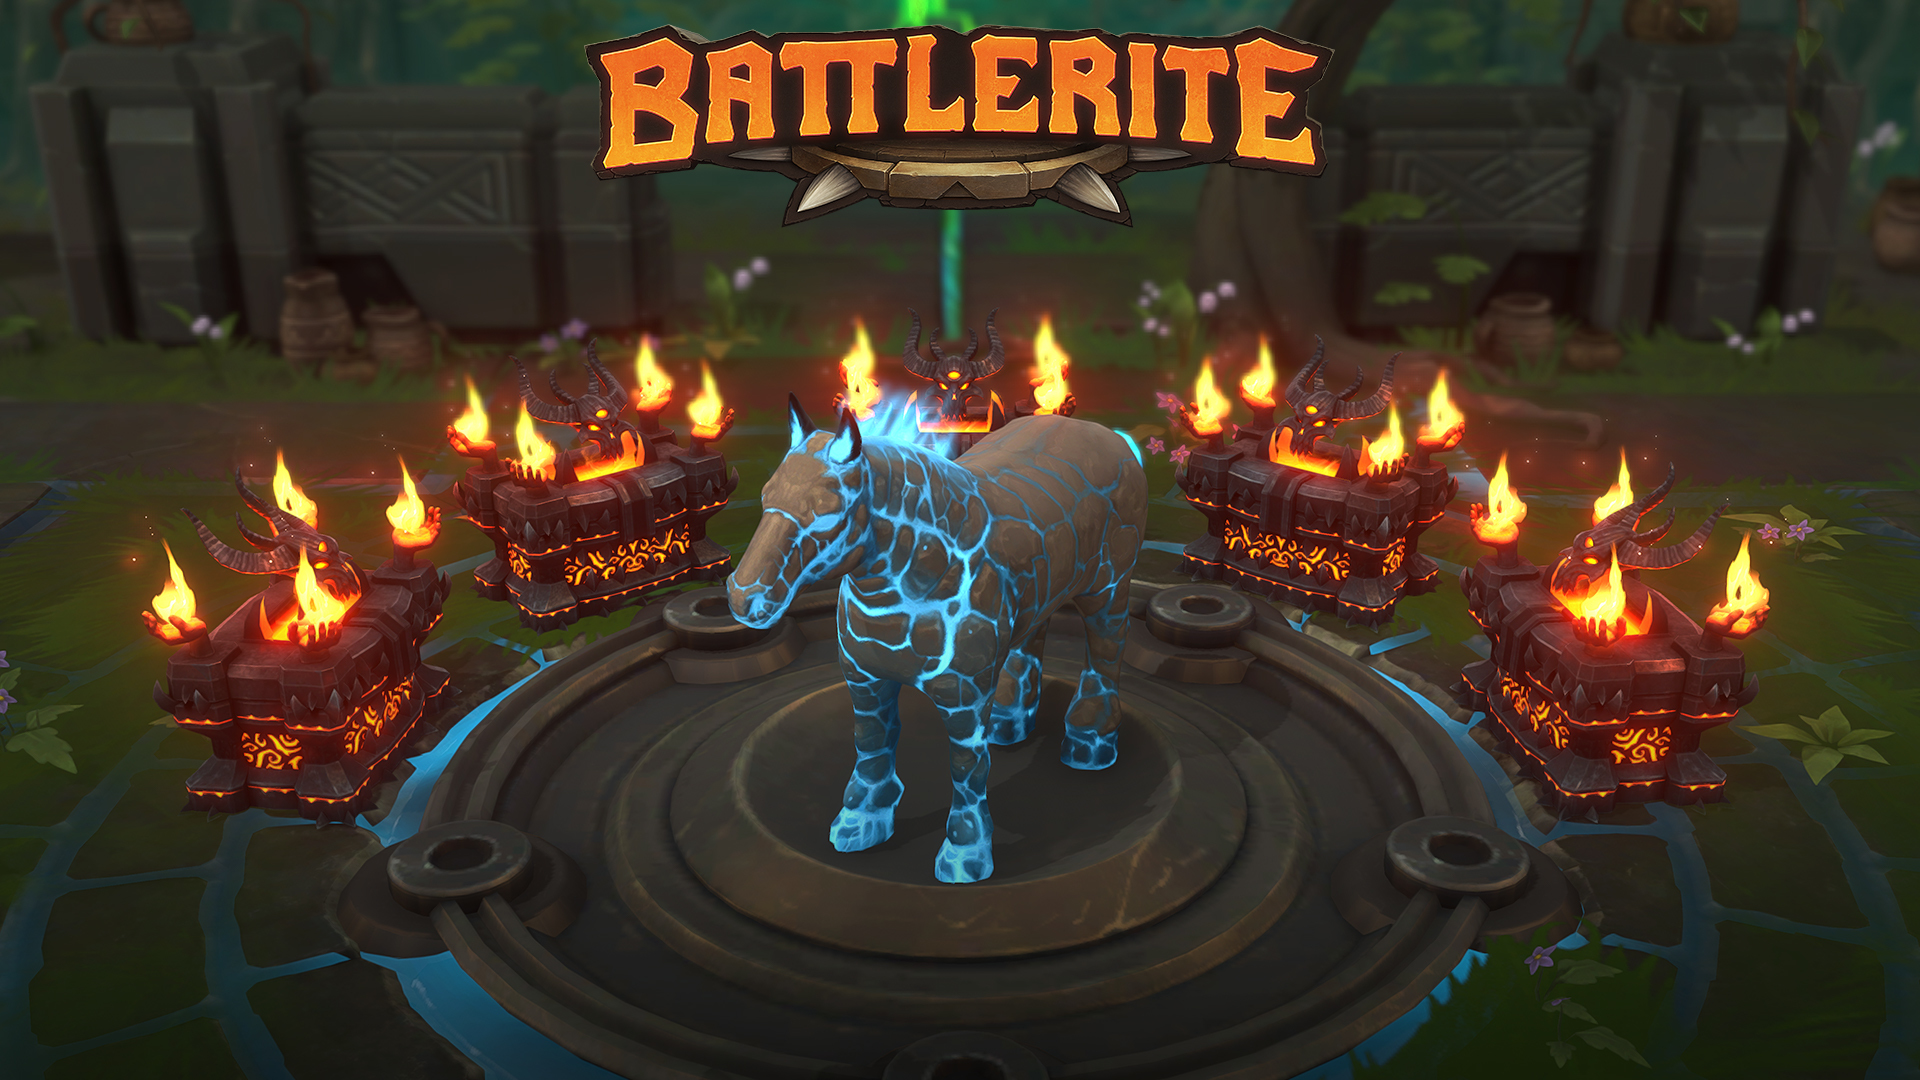 Steam Battlerite Battlerite Free to Play Celebration